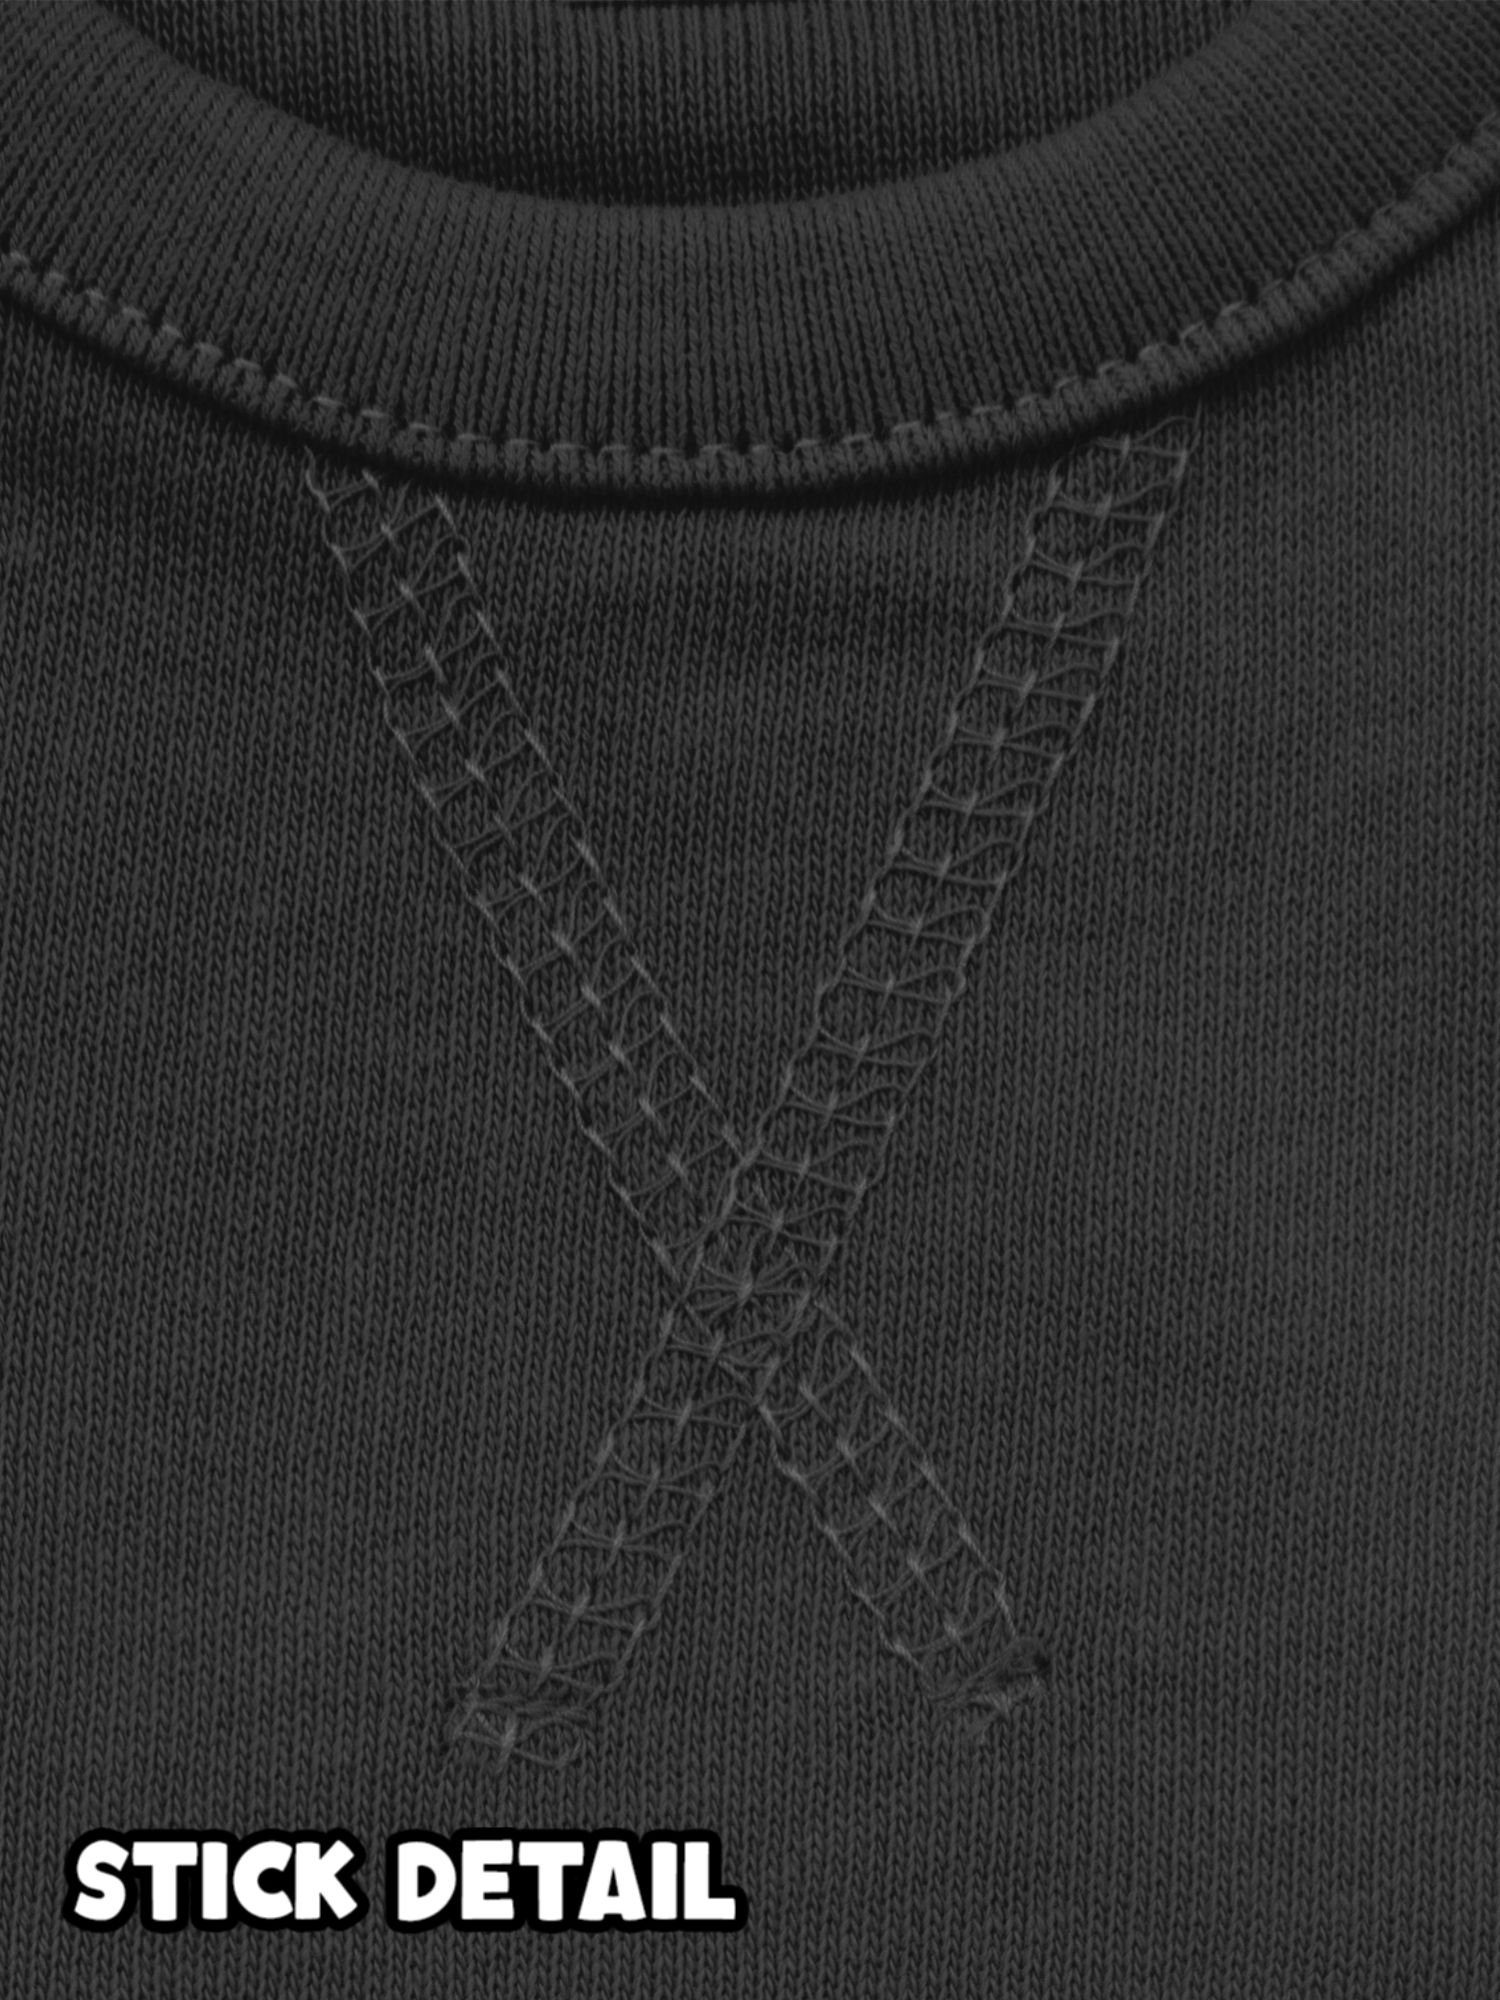 Shirtracer Sweatshirt So gut 1. man Geburtstag kann 3 aussehen mit eins Schwarz